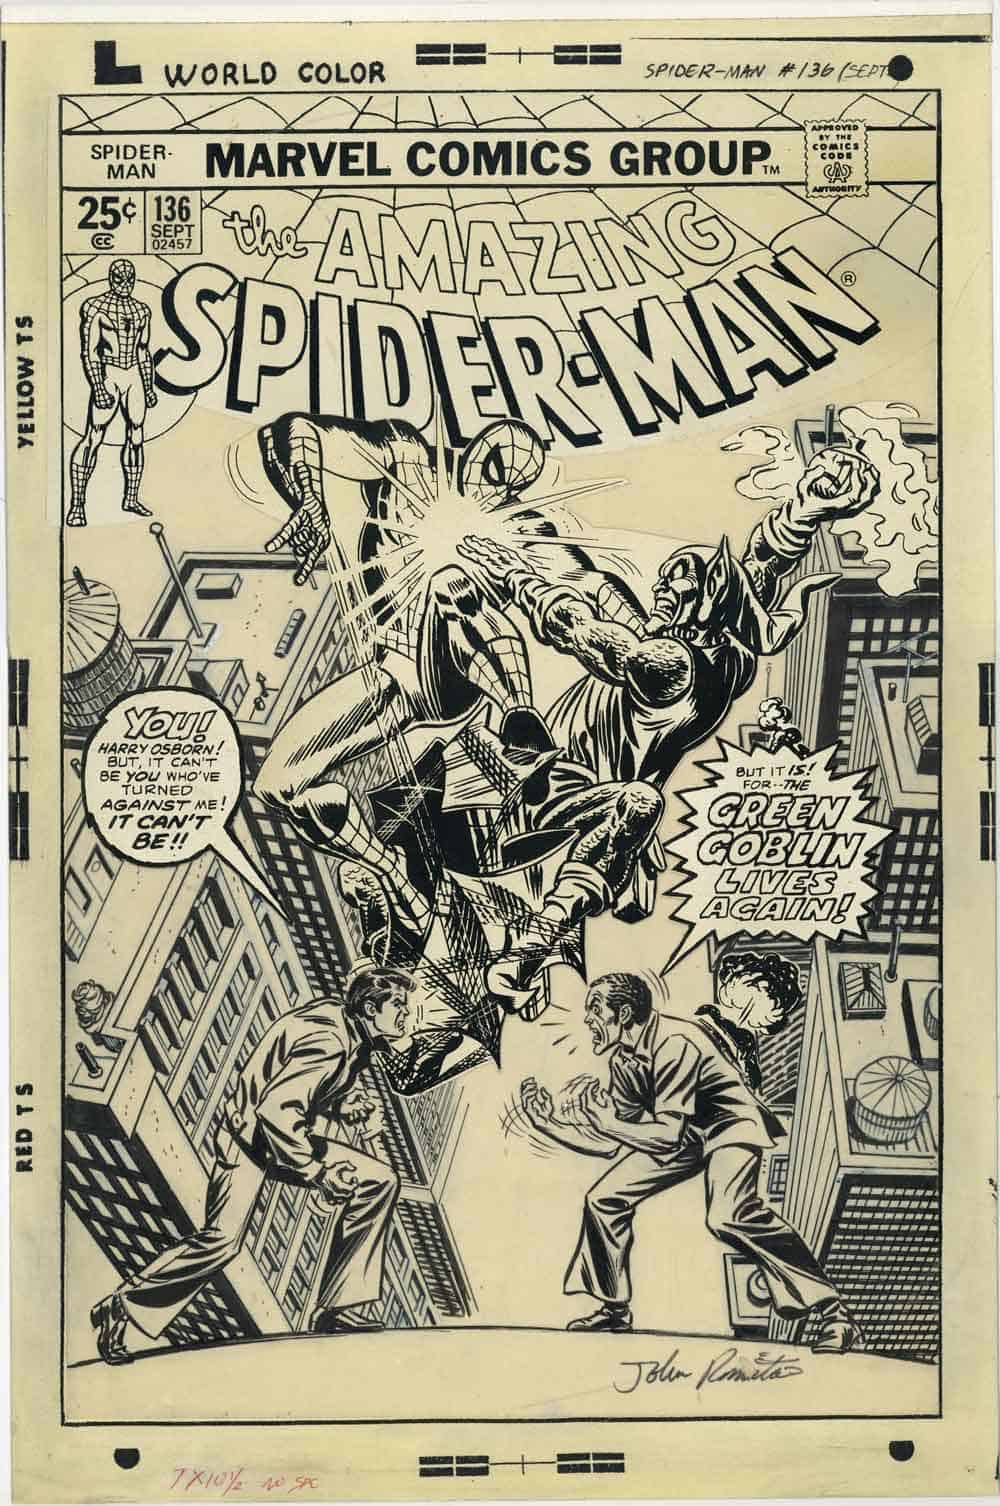 Portada de John Romita para el nº 136 de Spider-man